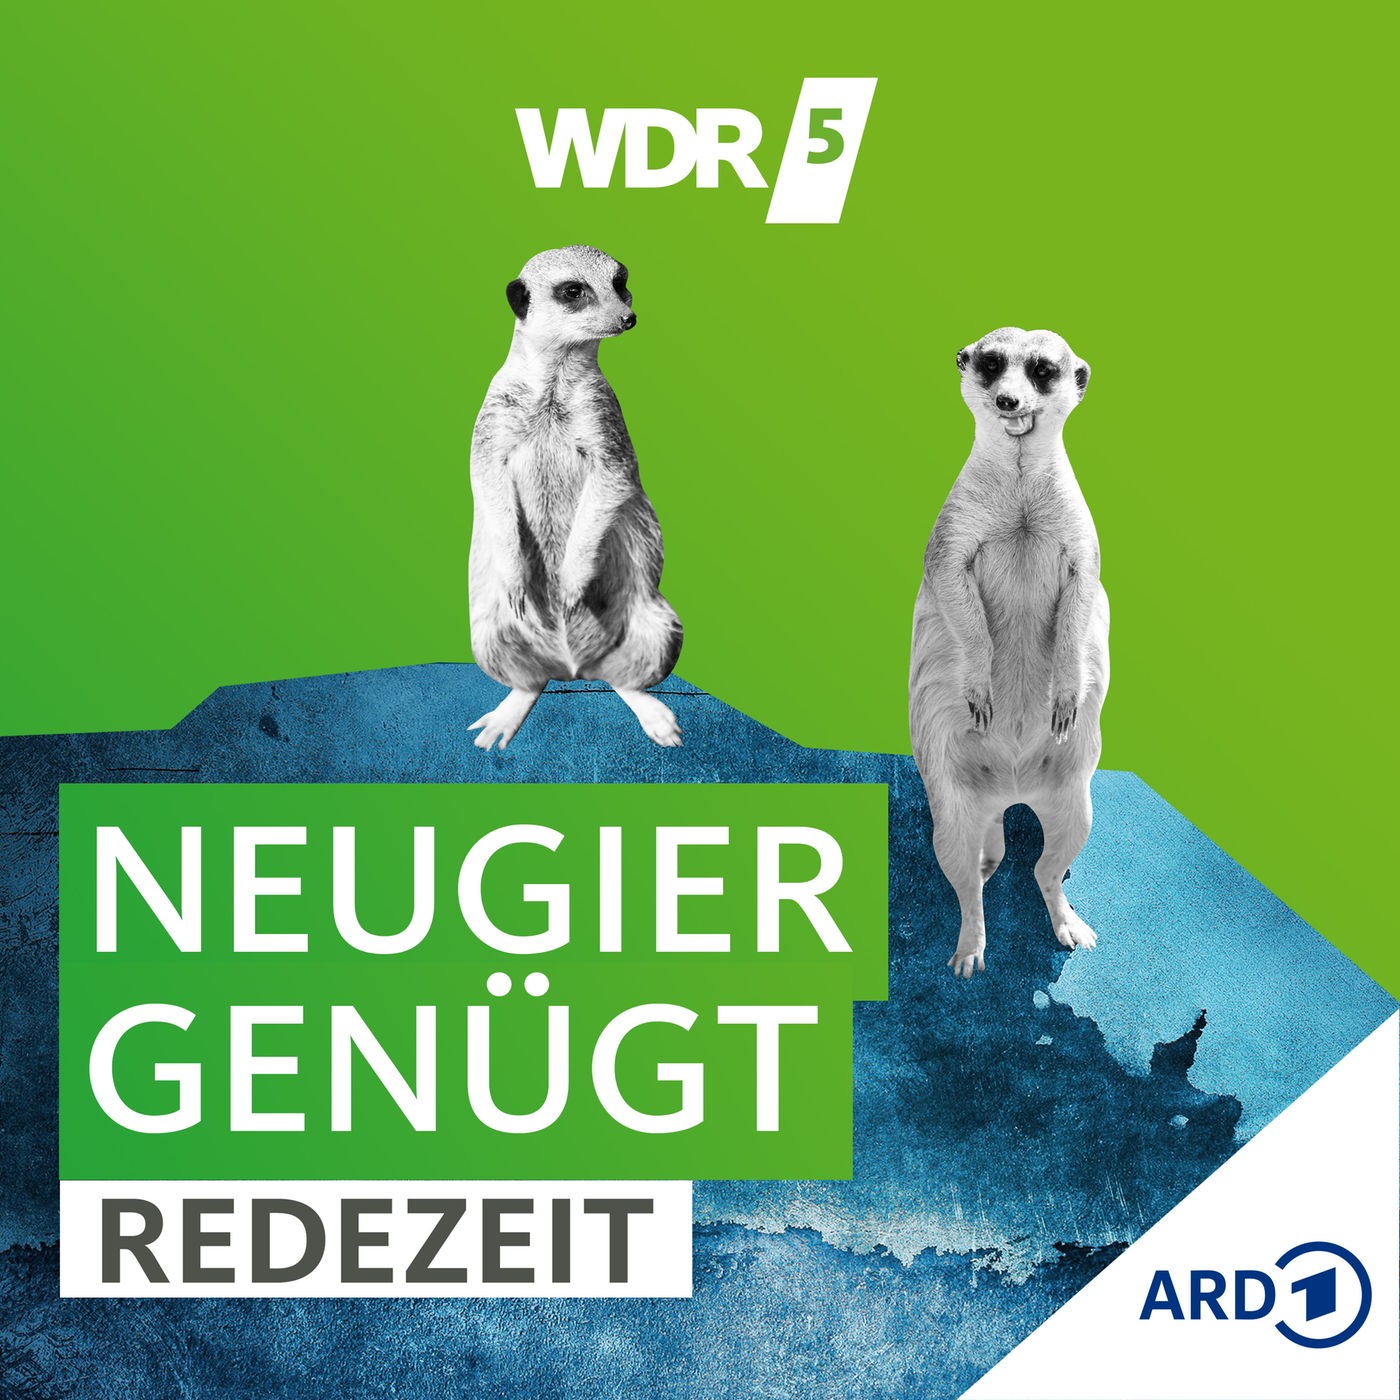 WDR 5 Neugier genügt - Redezeit